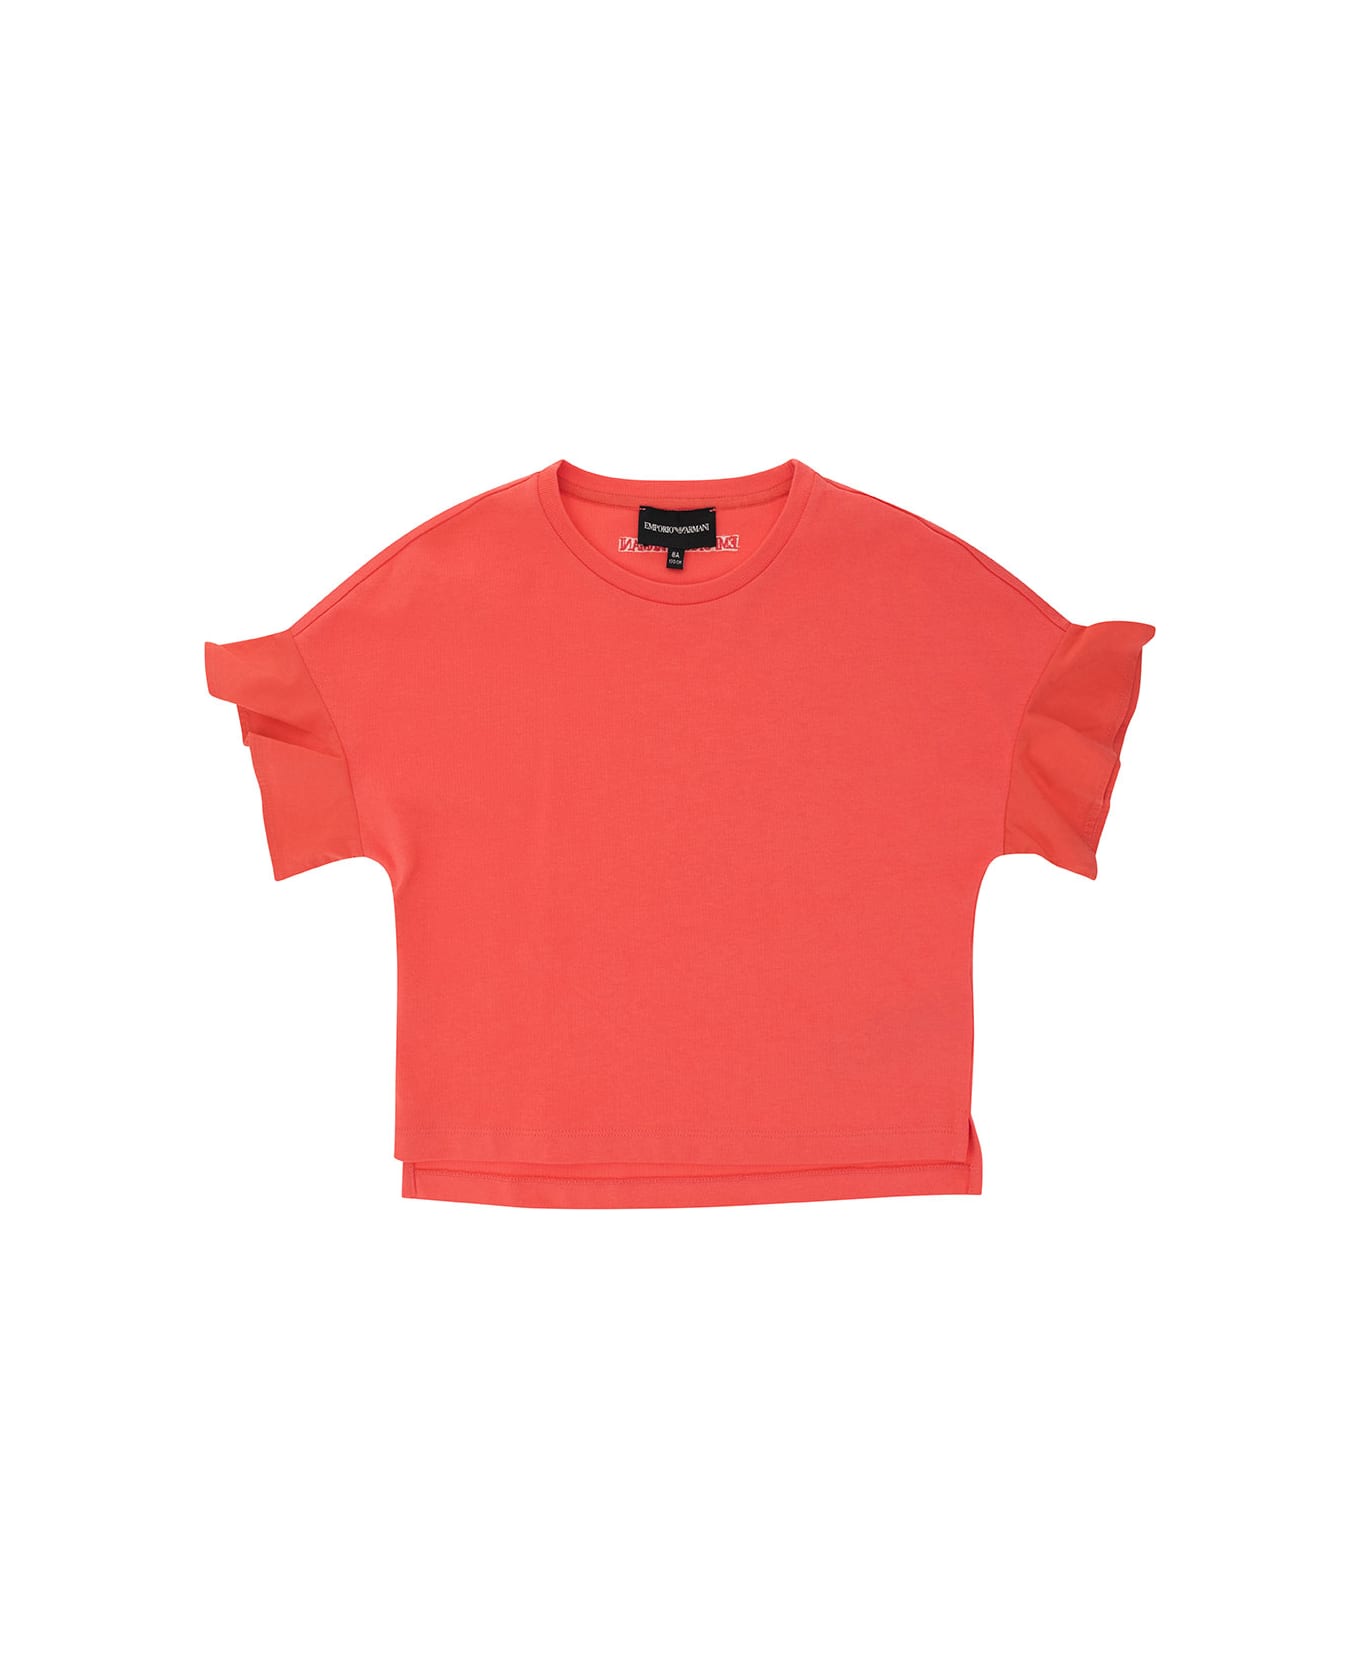 Emporio Armani Orange Crewneck T-shirt In Cotton Girl - Fuxia